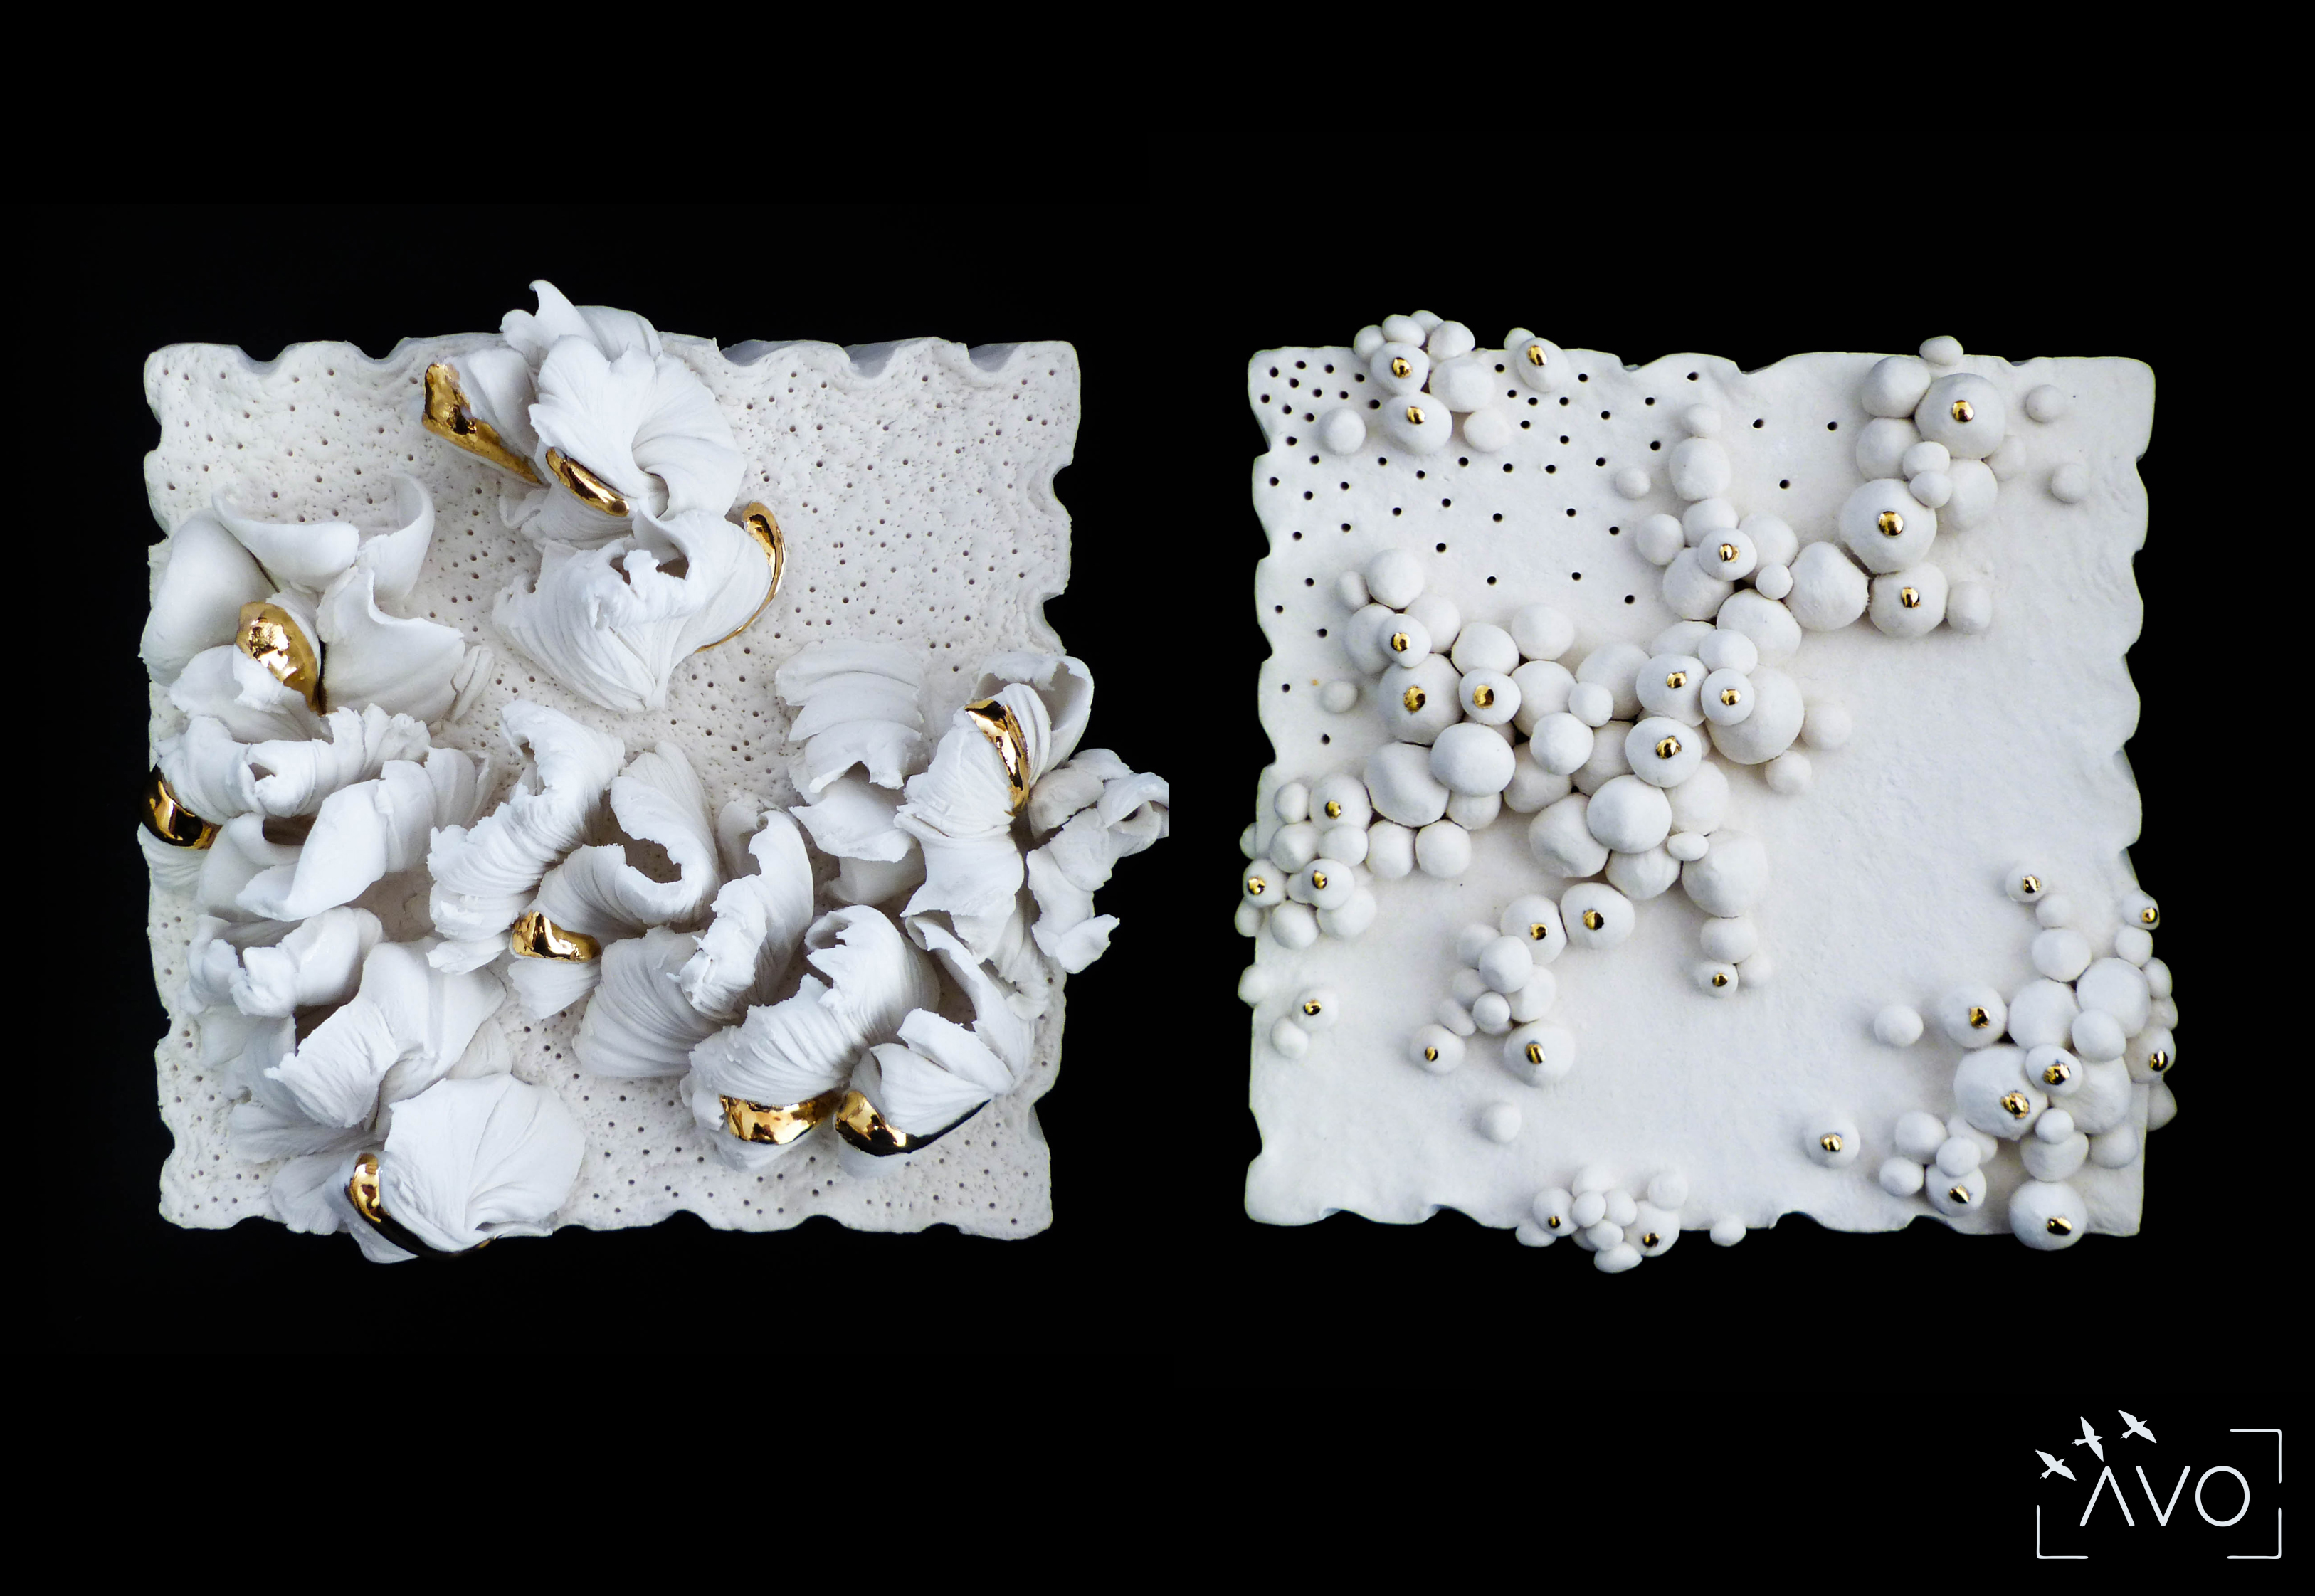 les carrés céramique porcelaine st pierre d'allevard stage cours atelier papier céramique art corail paysage mer